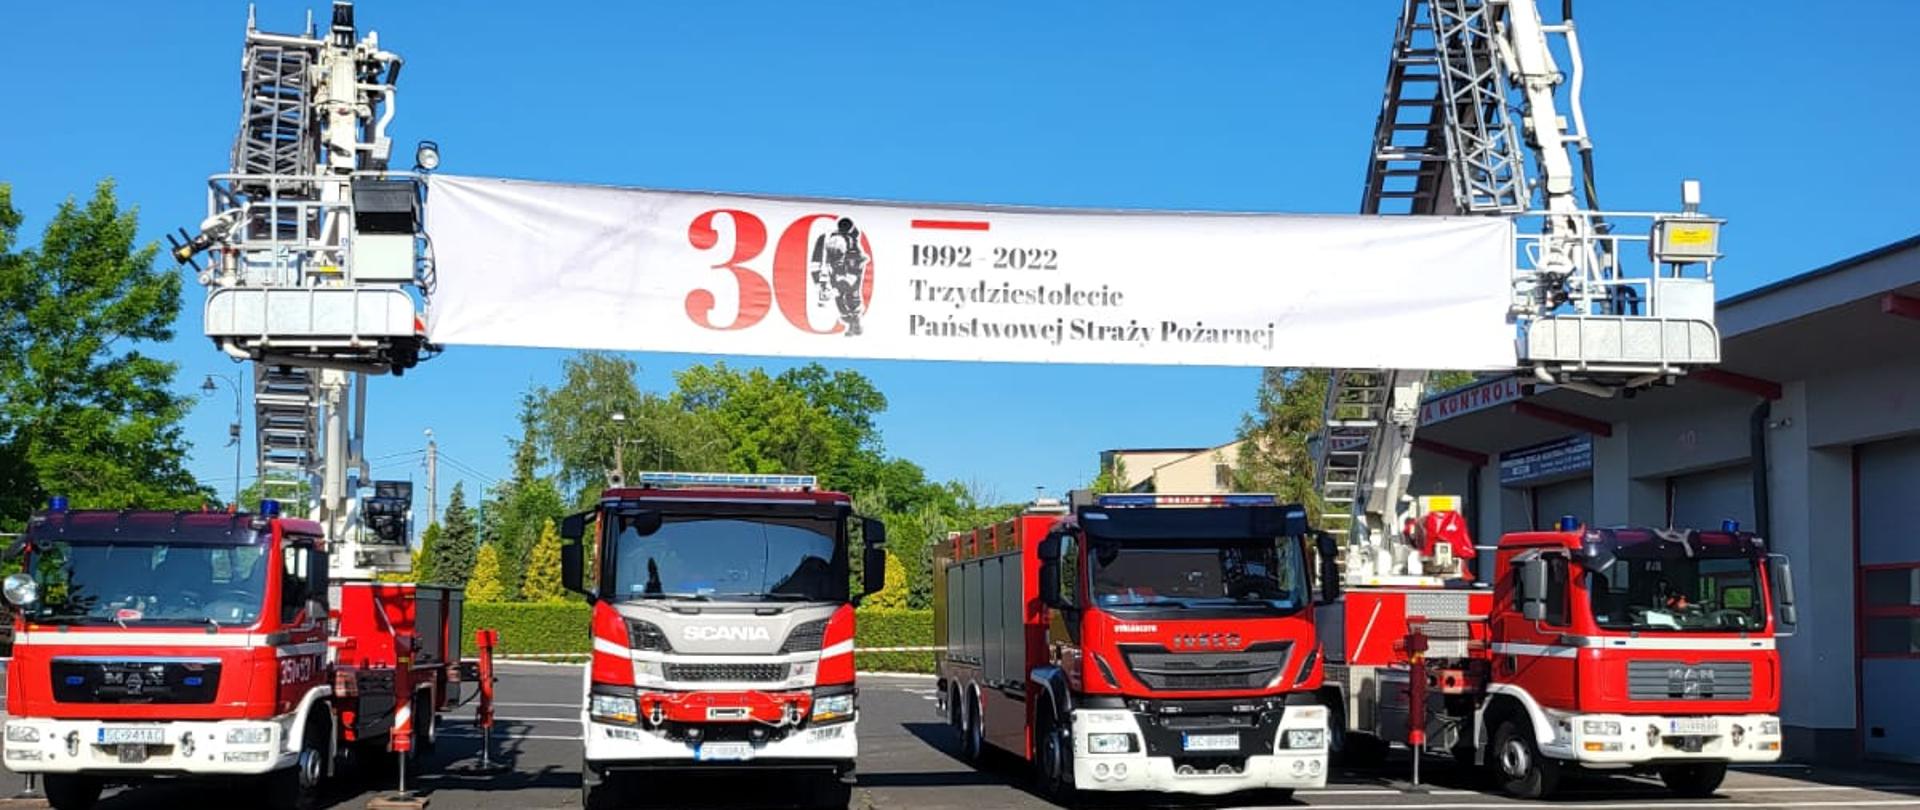 Na zdjęciu widoczne pojazdy pożarnicze oraz baner 30 lecie PSP